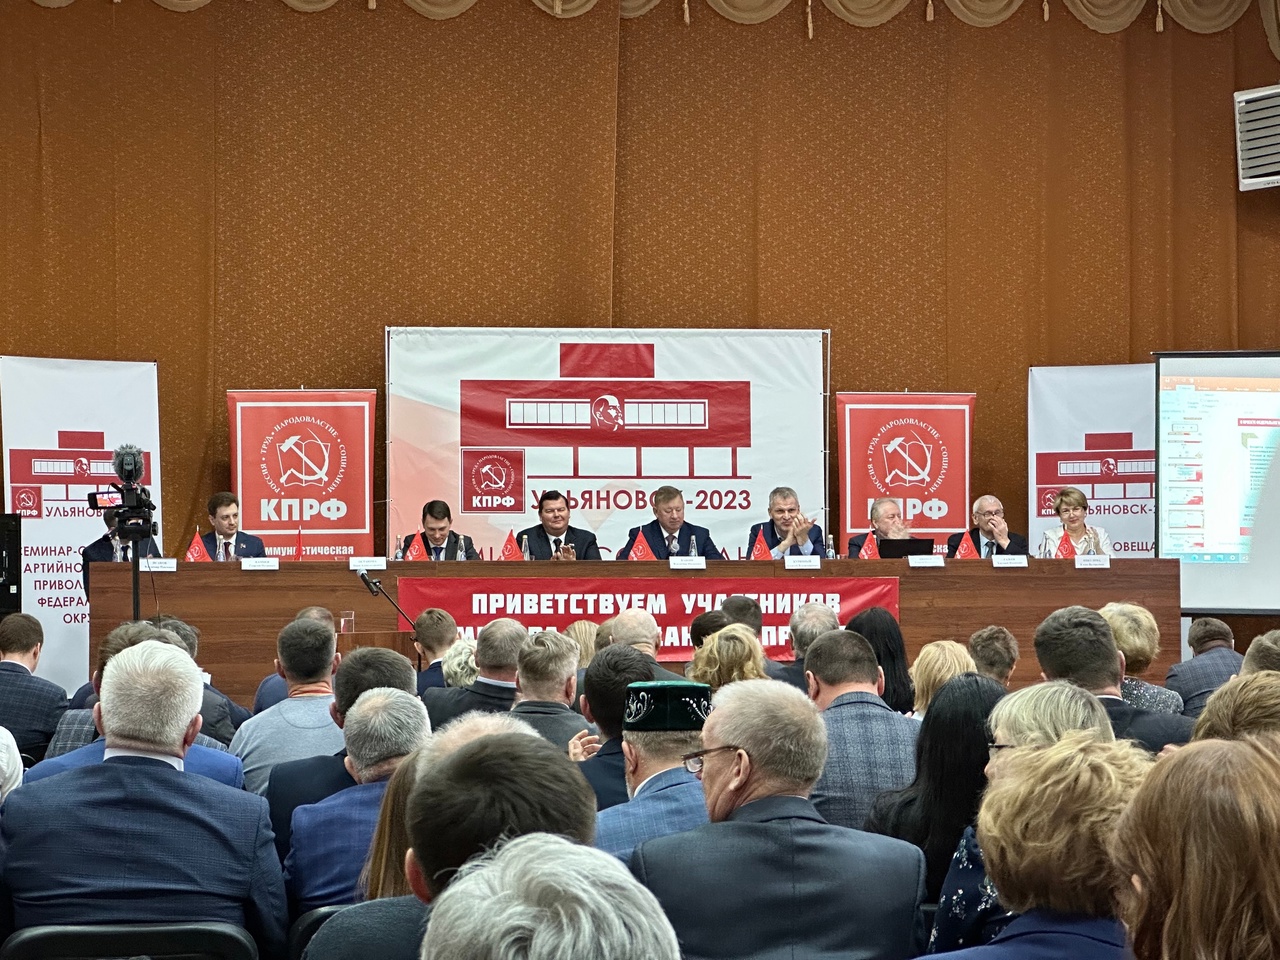 Сегодня в Ульяновске состоялось открытие семинара-совещания партактива региональных отделений КПРФ Приволжского федерального округа.